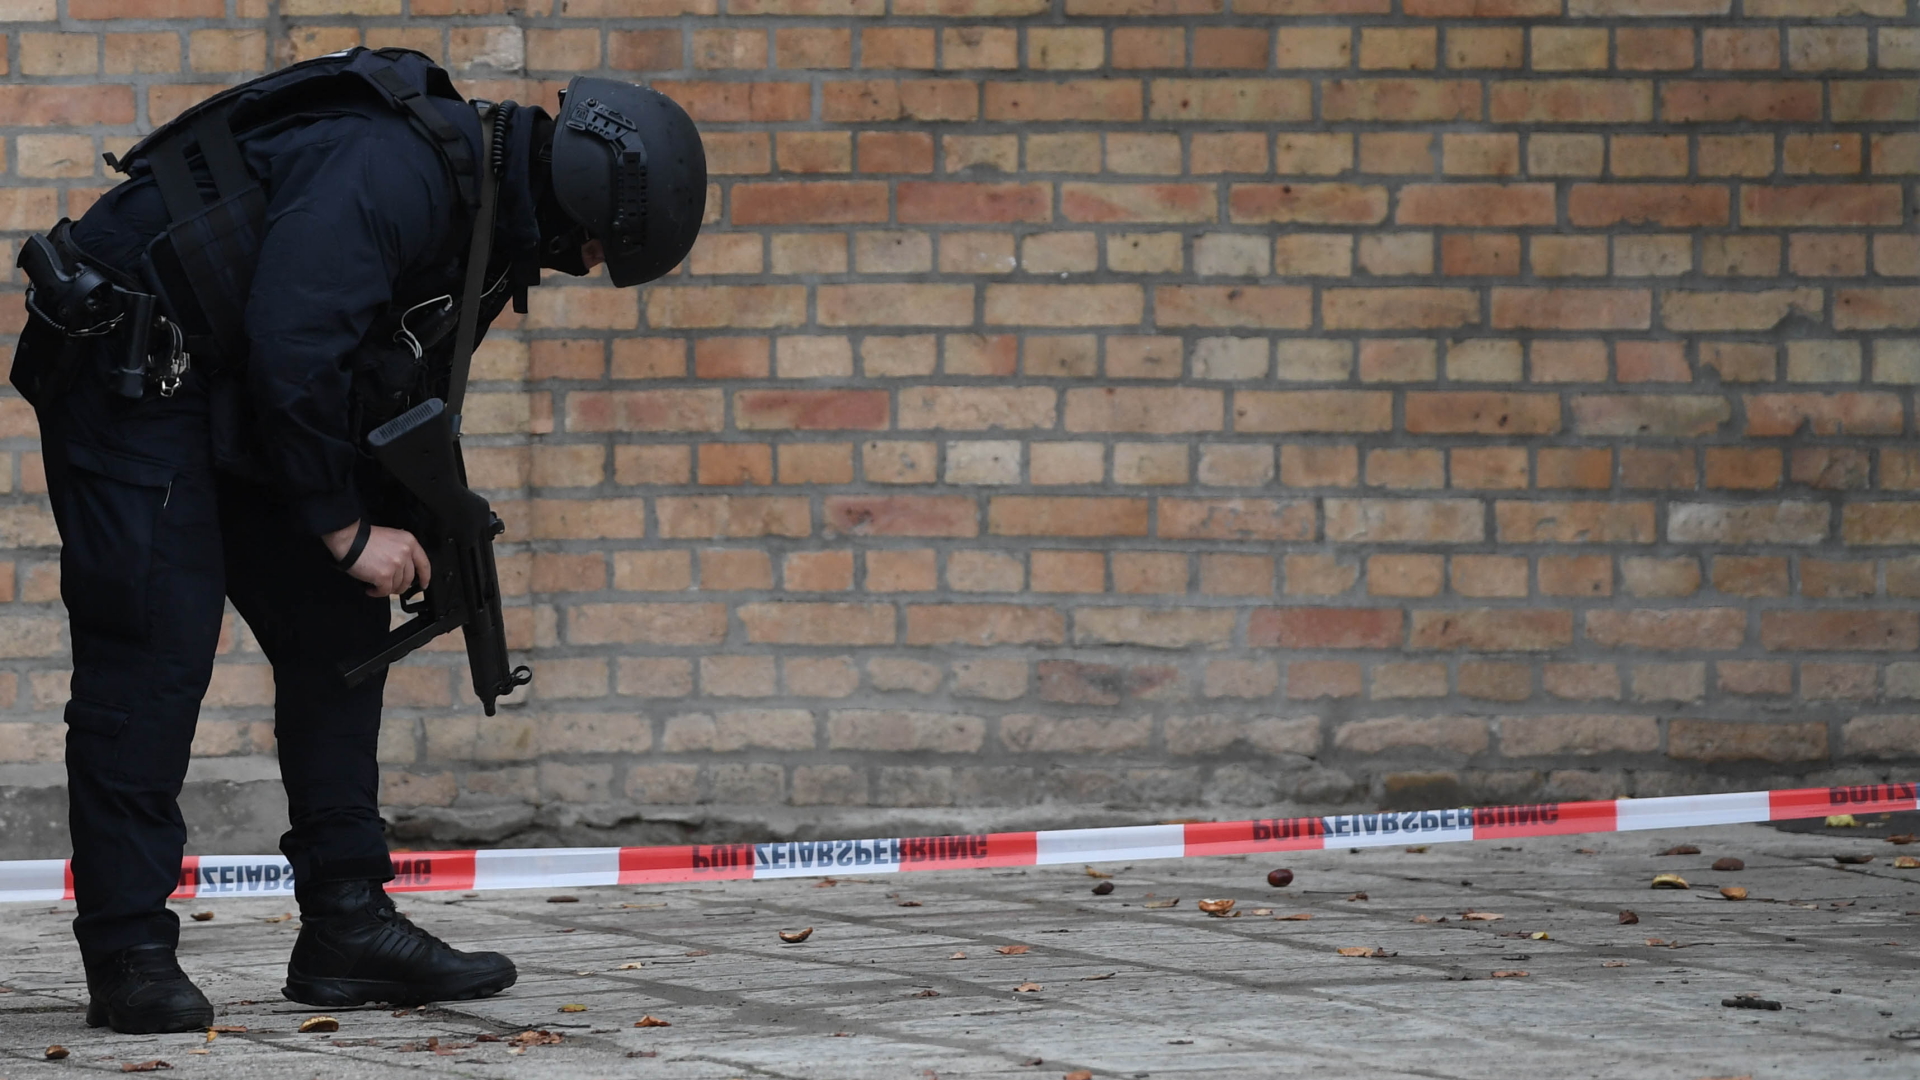 Ein Polizist nach dem Anschlag in Halle. | Bildquelle: FILIP SINGER/EPA-EFE/REX